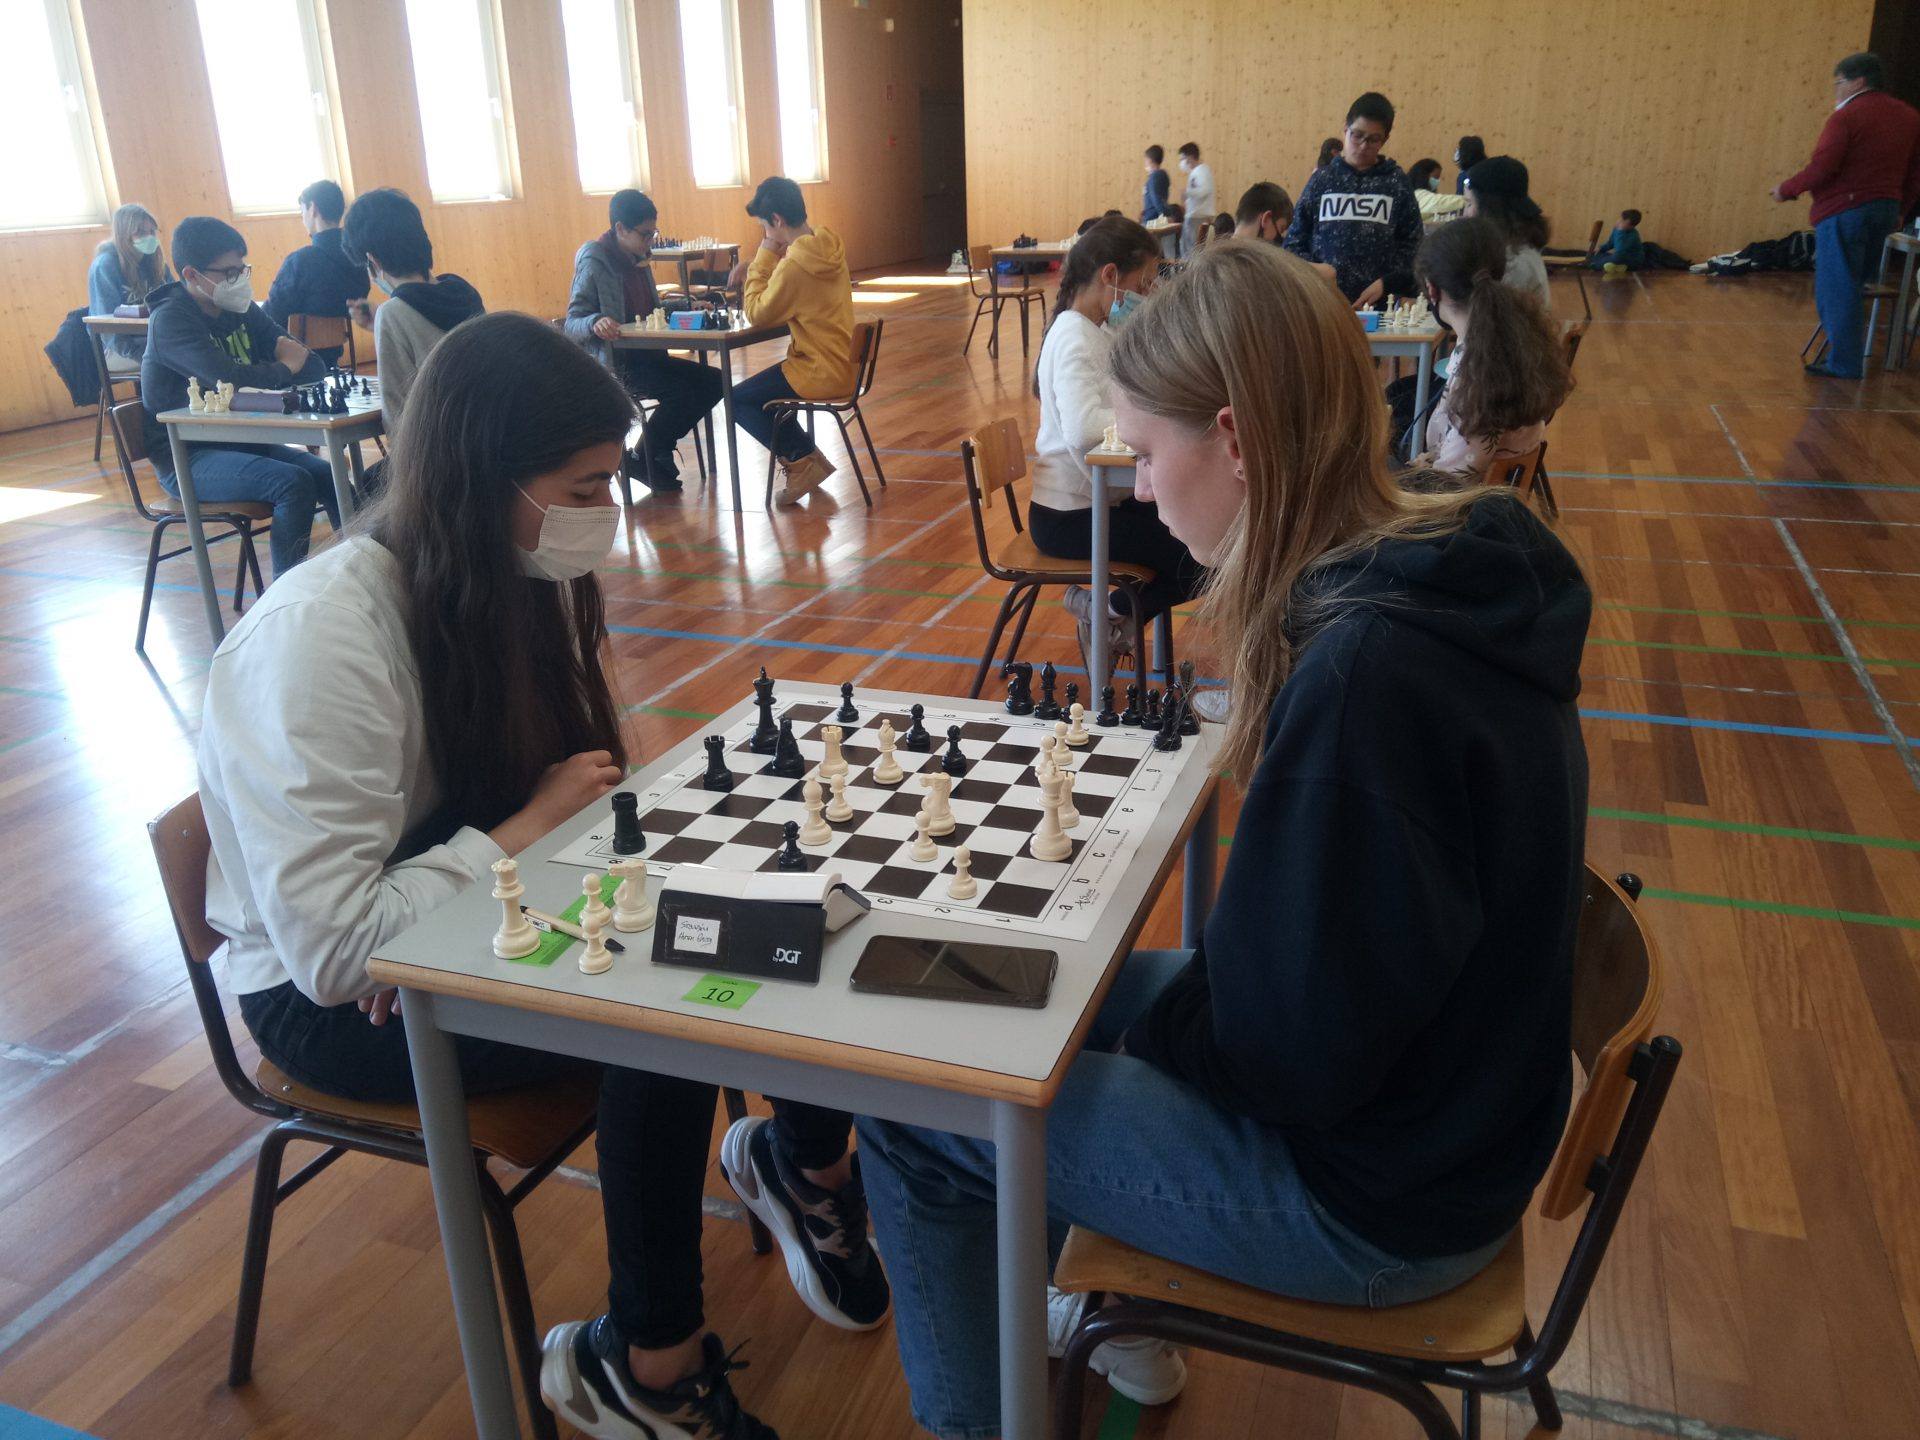 O Xadrez no Desporto Escolar em Leiria: Curso de Xadrez e